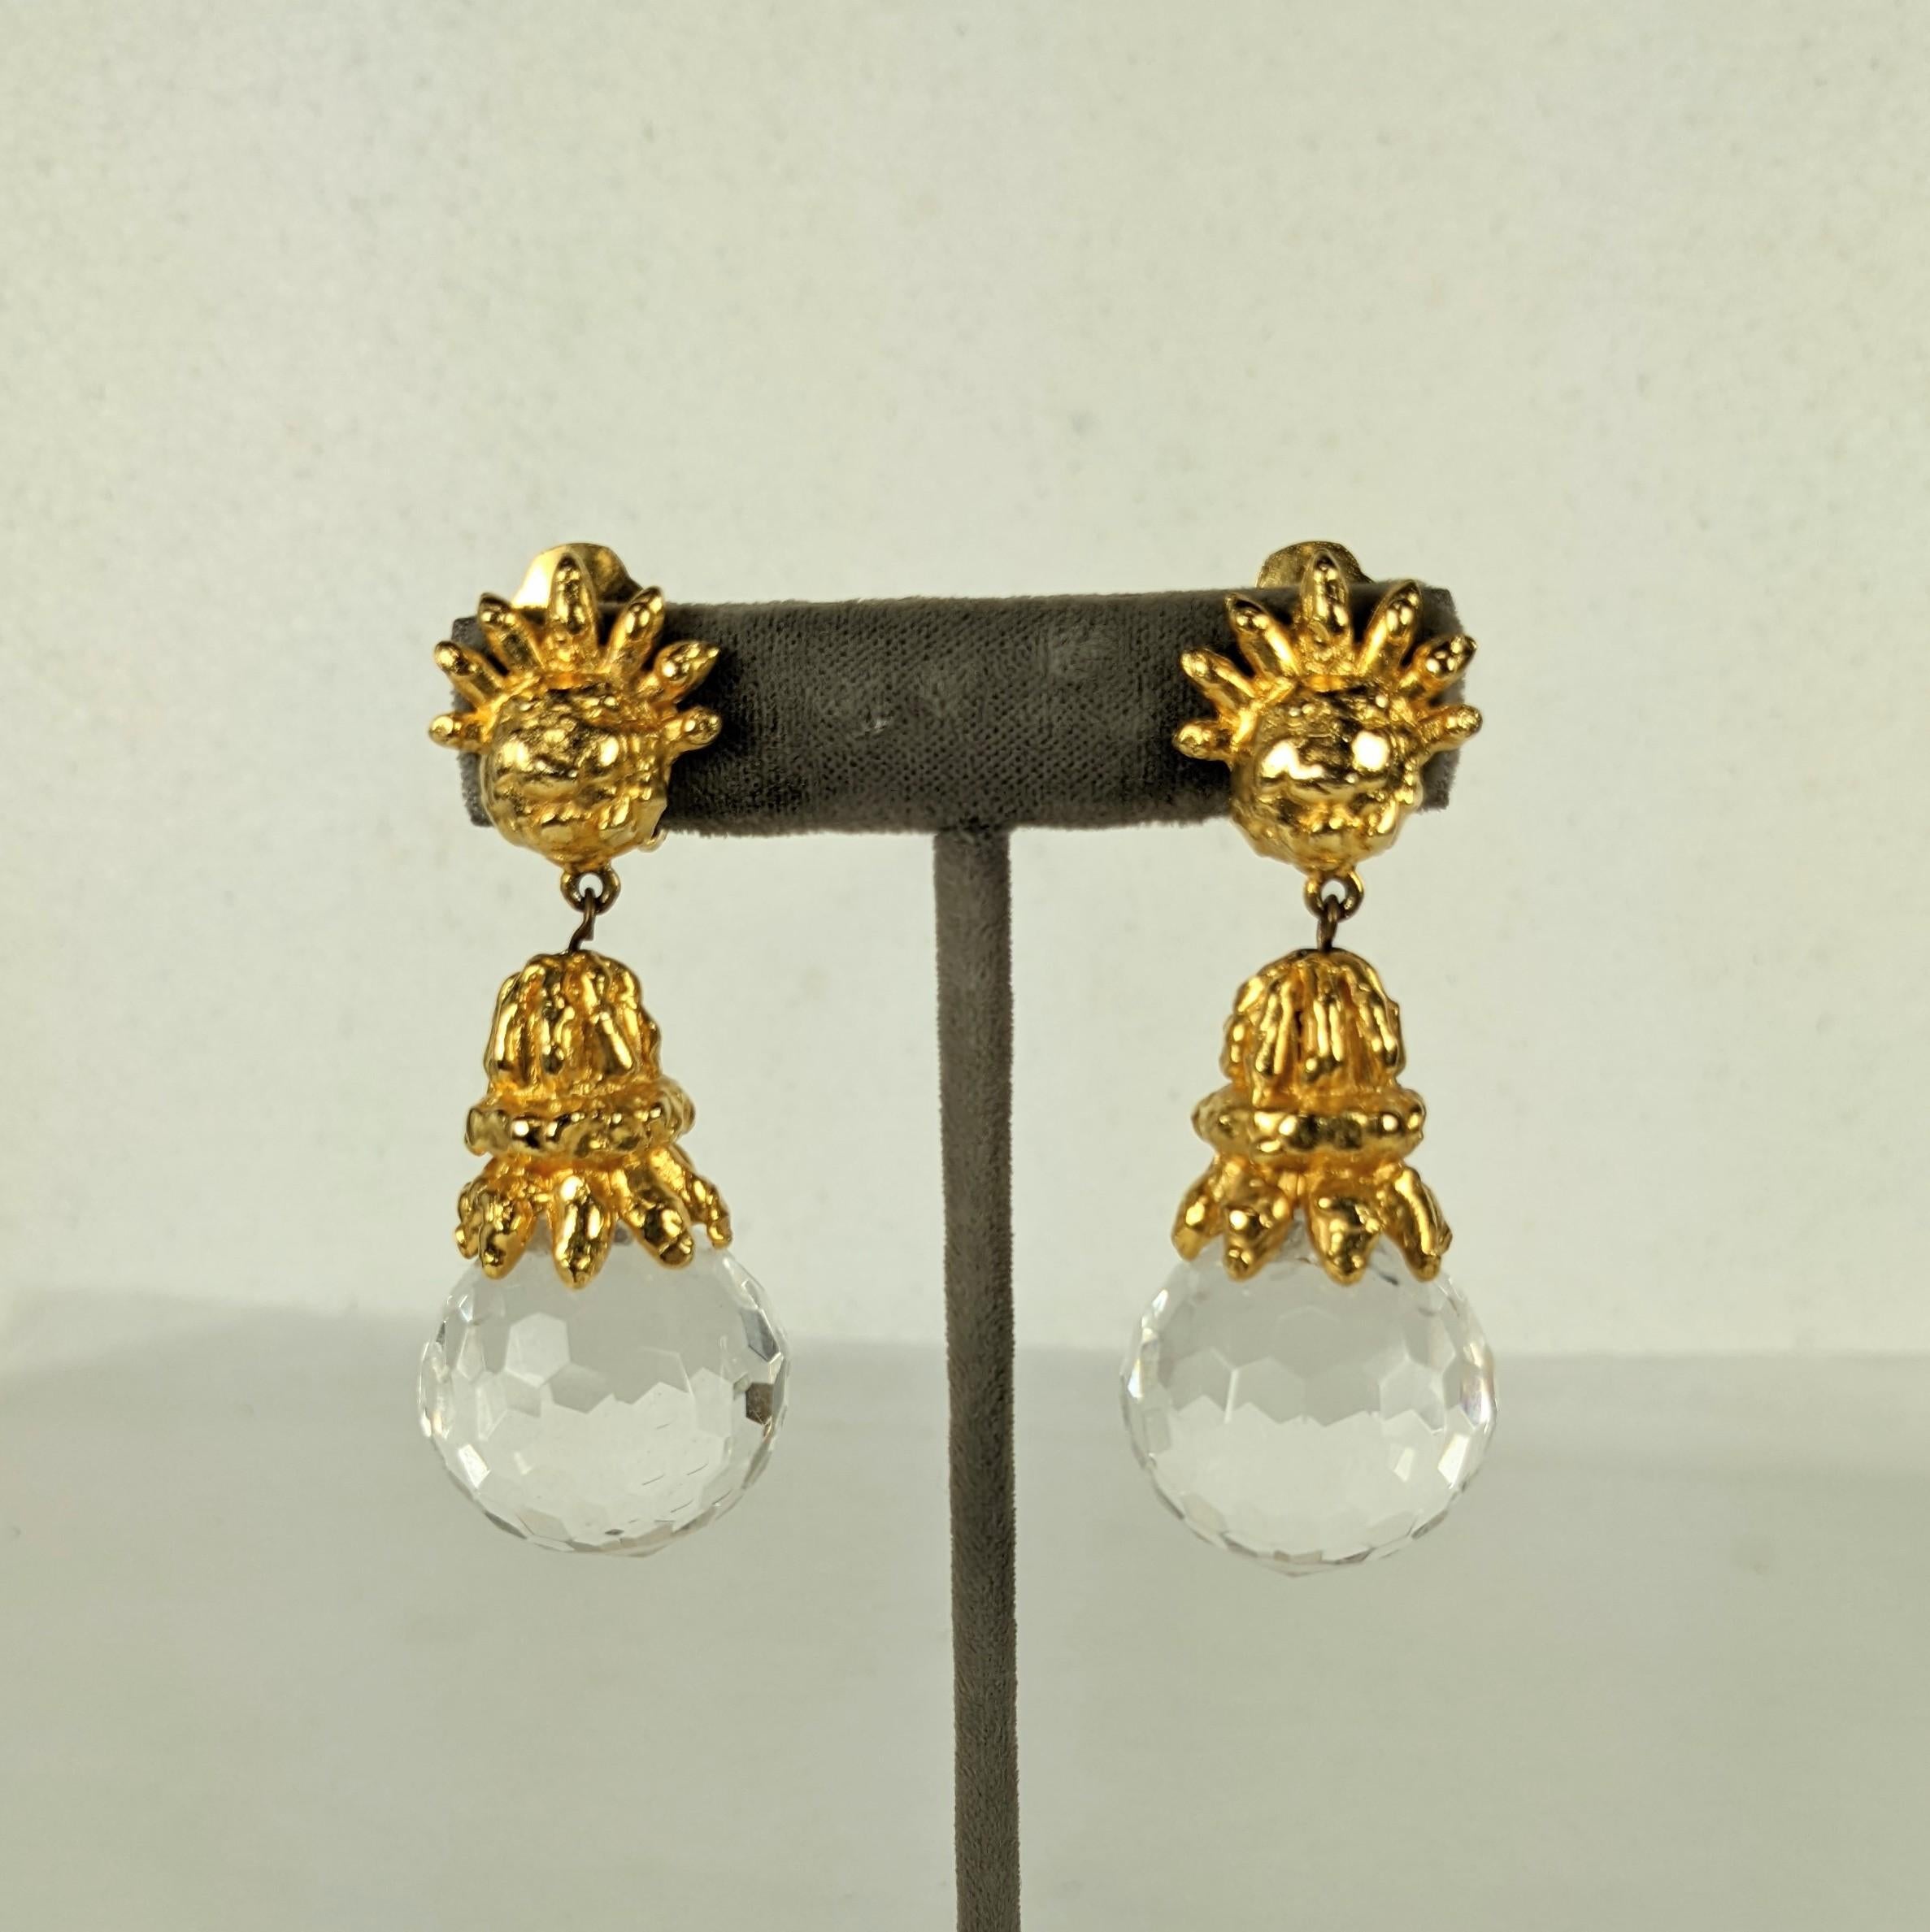 Attraktive frühe K.J.L. Ohrringe aus gehämmertem Gold und Kristall aus den 1960er Jahren. Großformatige Clip-Ohrringe aus vergoldetem Metall und facettiertem Lucit, die dem Stil von David Webb nachempfunden sind. Tragbares Gewicht mit